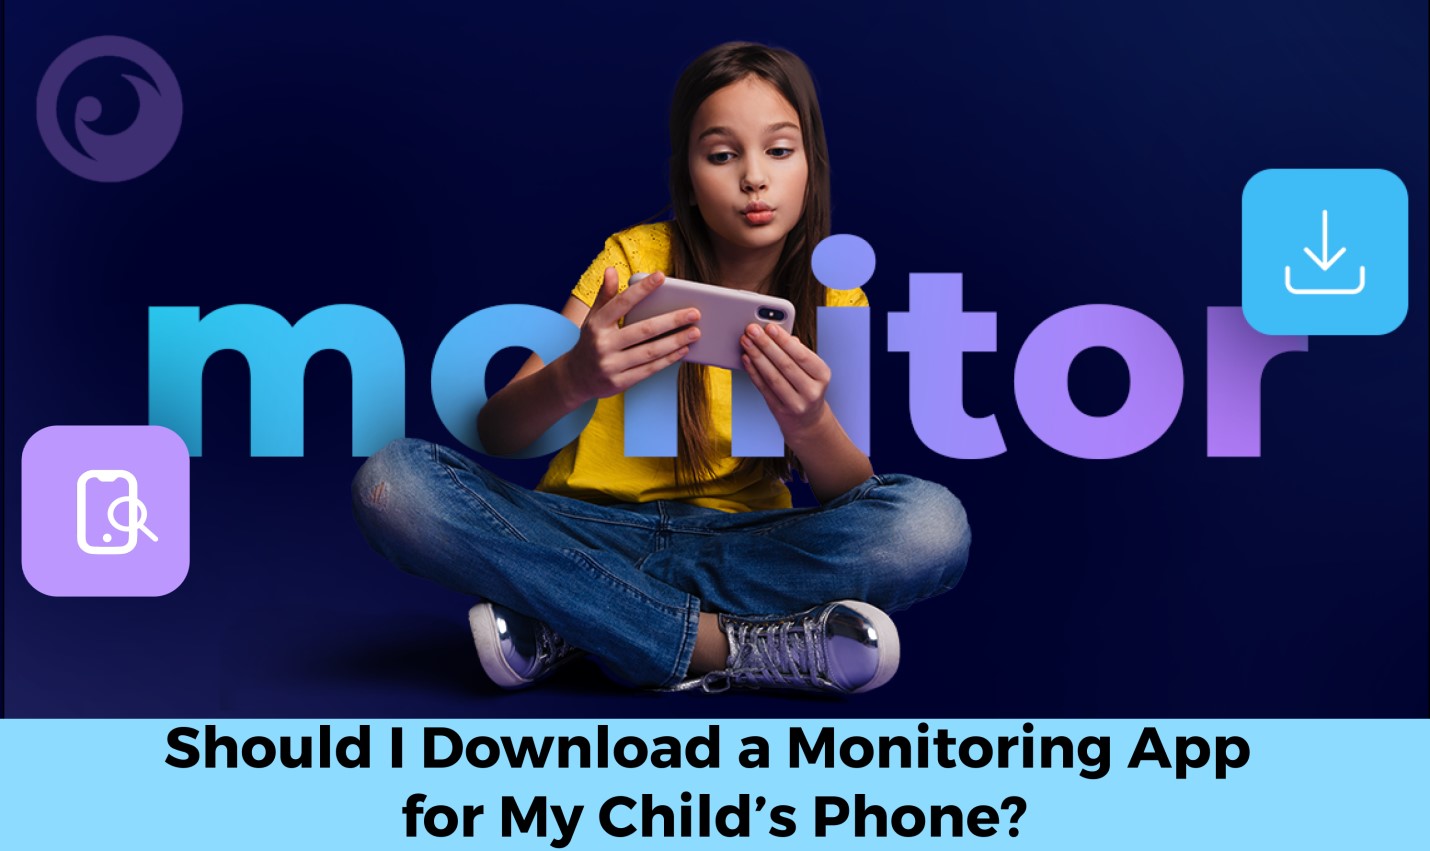 Стоит ли загружать приложение для мониторинга на телефон моего ребенка? - изображение новостей на imei.info